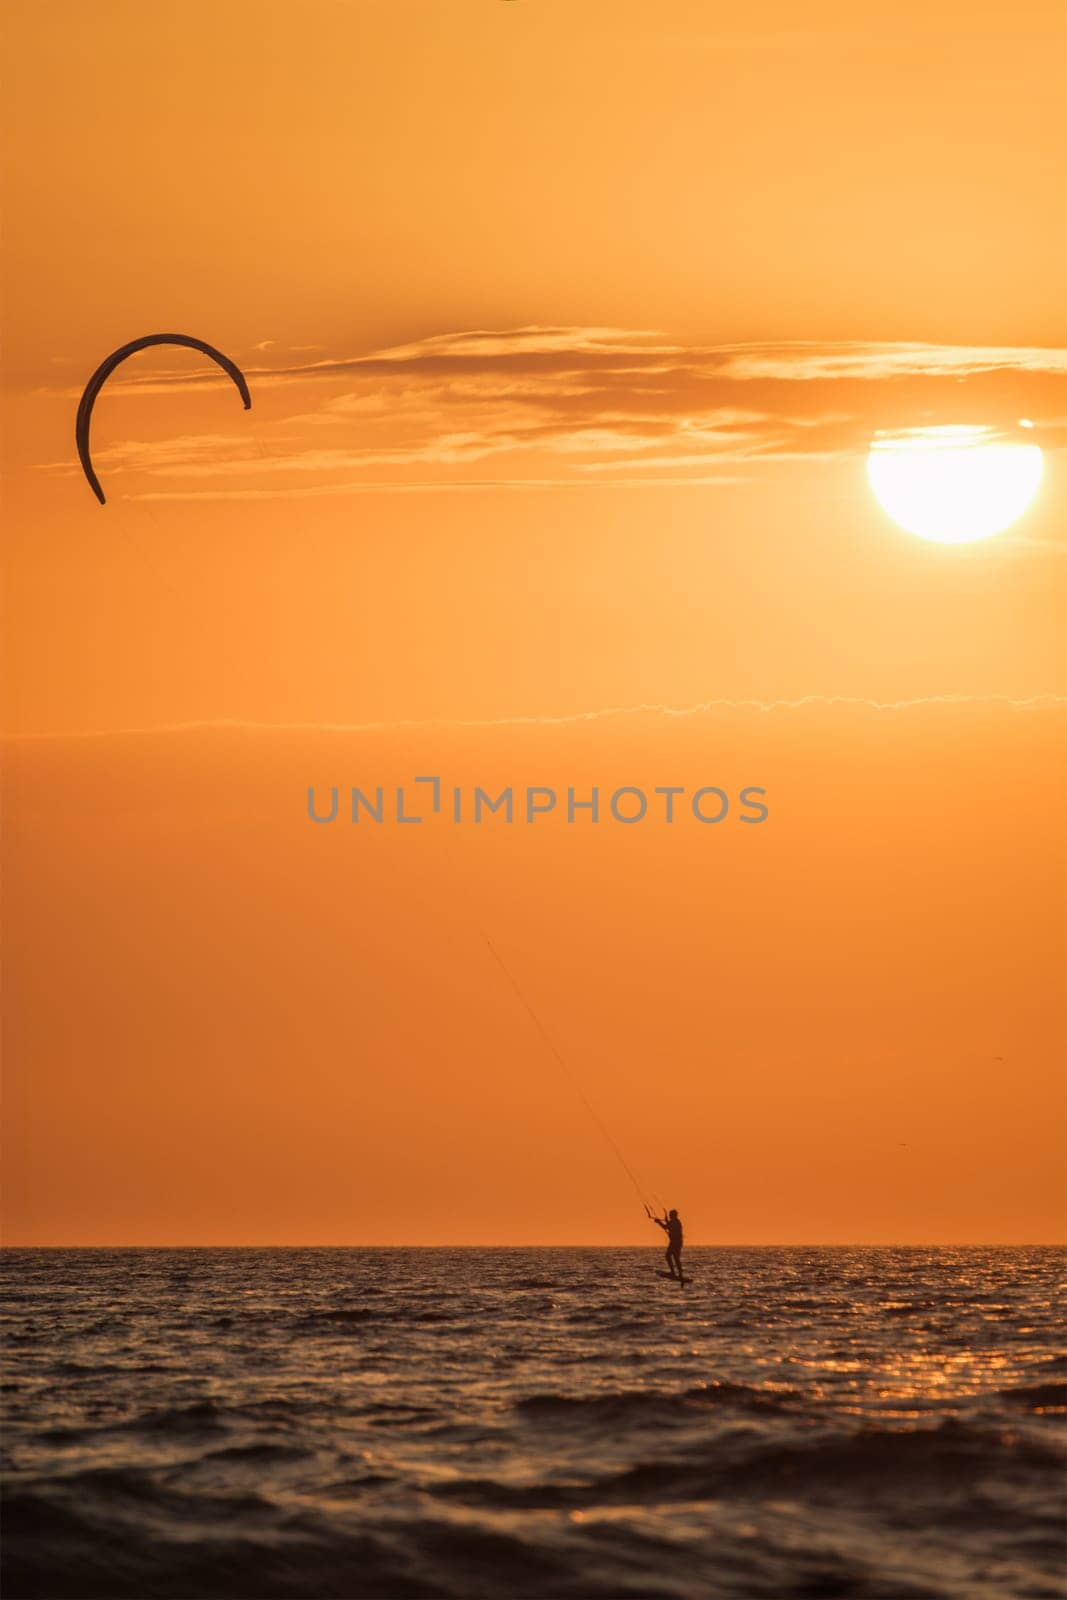 Kiteboarding kitesurfing kiteboarder kitesurfer kites silhouette in the ocean on sunset by dimol